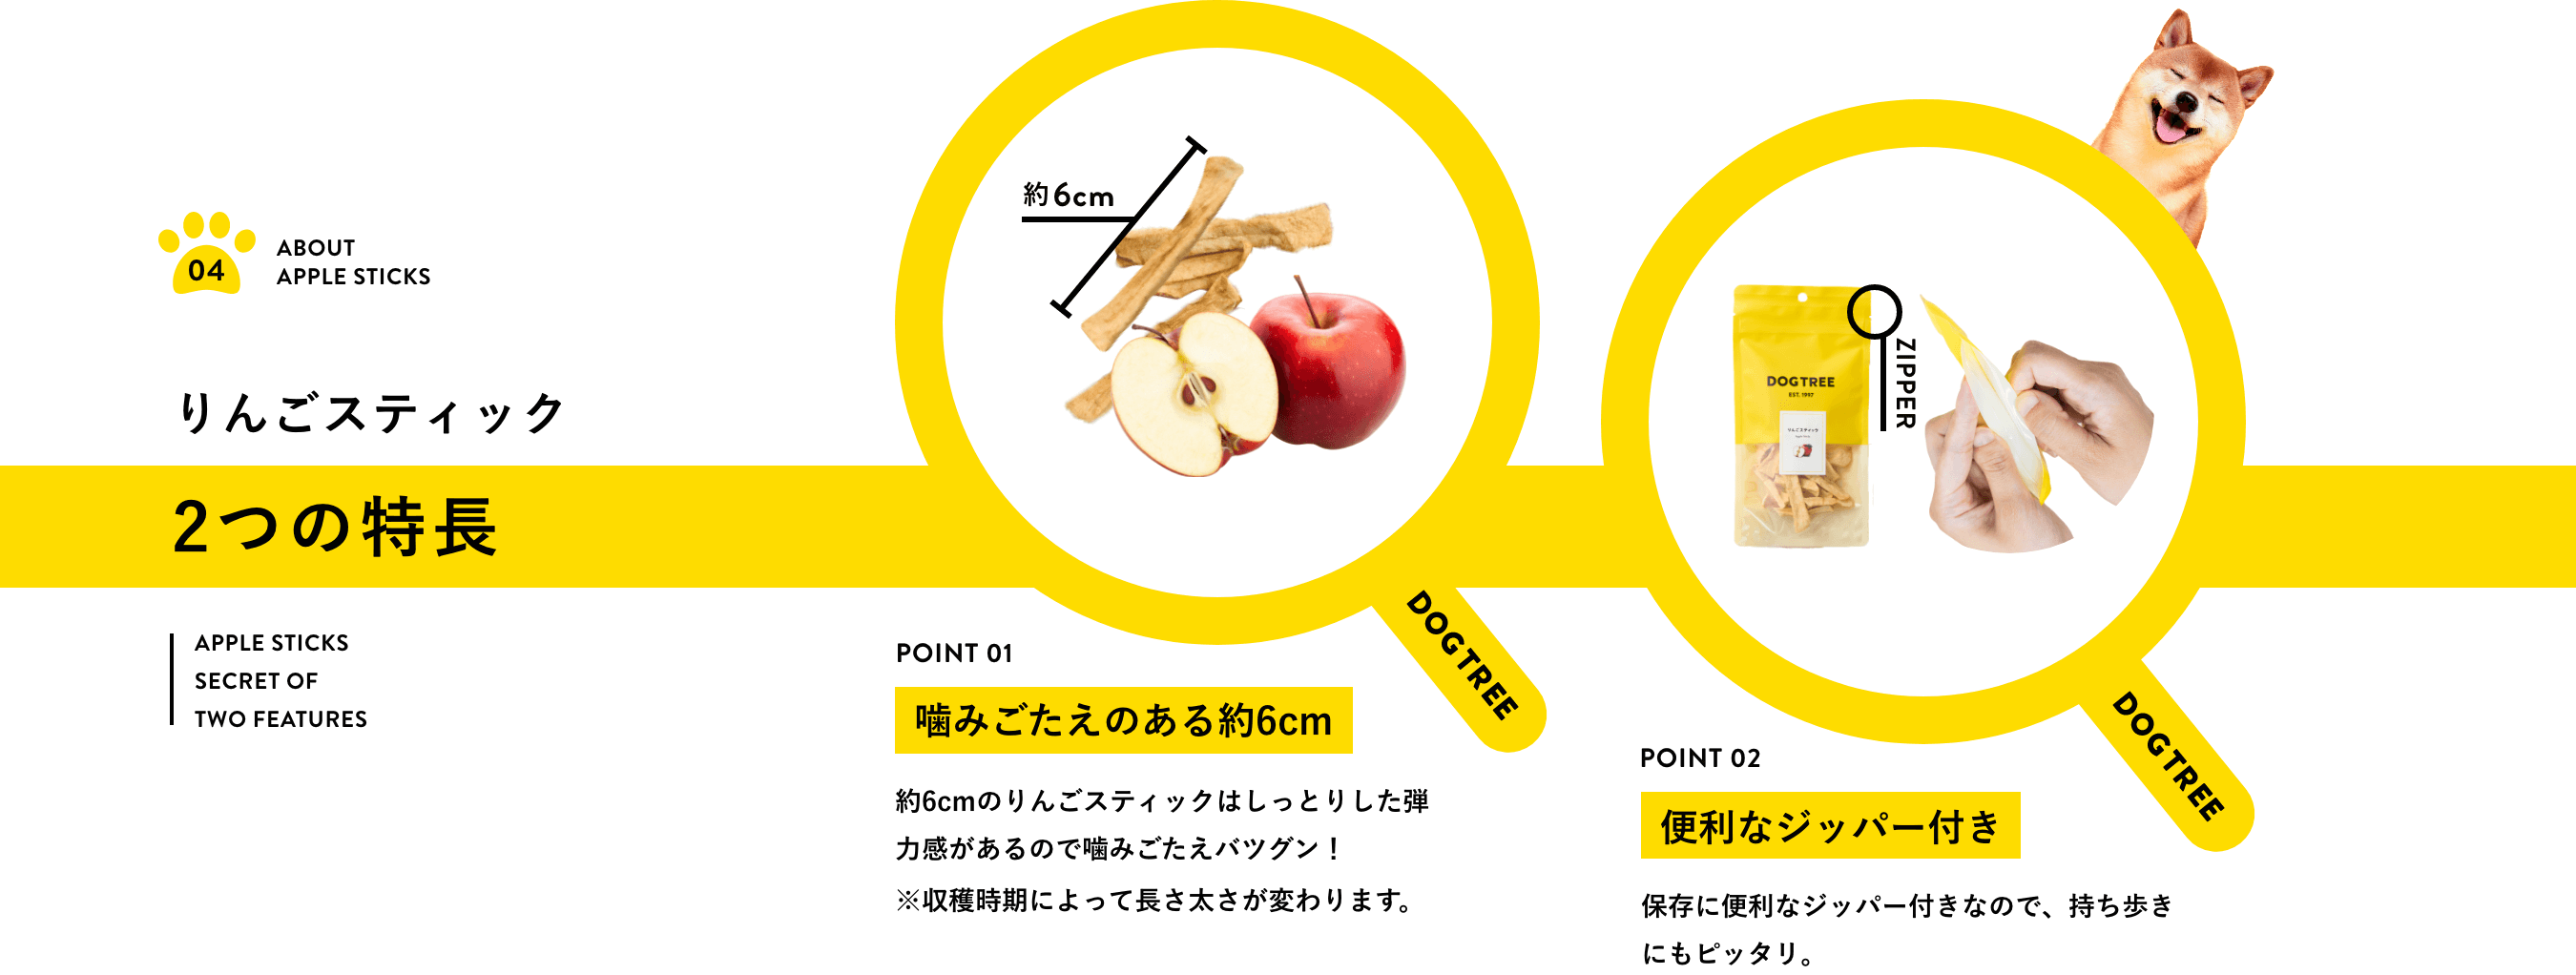 りんごスティック2つの特長！（1）噛みごたえのある約6cm！6cmのりんごスティックはしっとりした弾力感があるので噛みごたえバツグン！※収穫時期によって長さ太さが変わります。（2）便利なジッパー付き！保存に便利なジッパー付きなので、持ち歩きにもピッタリ。